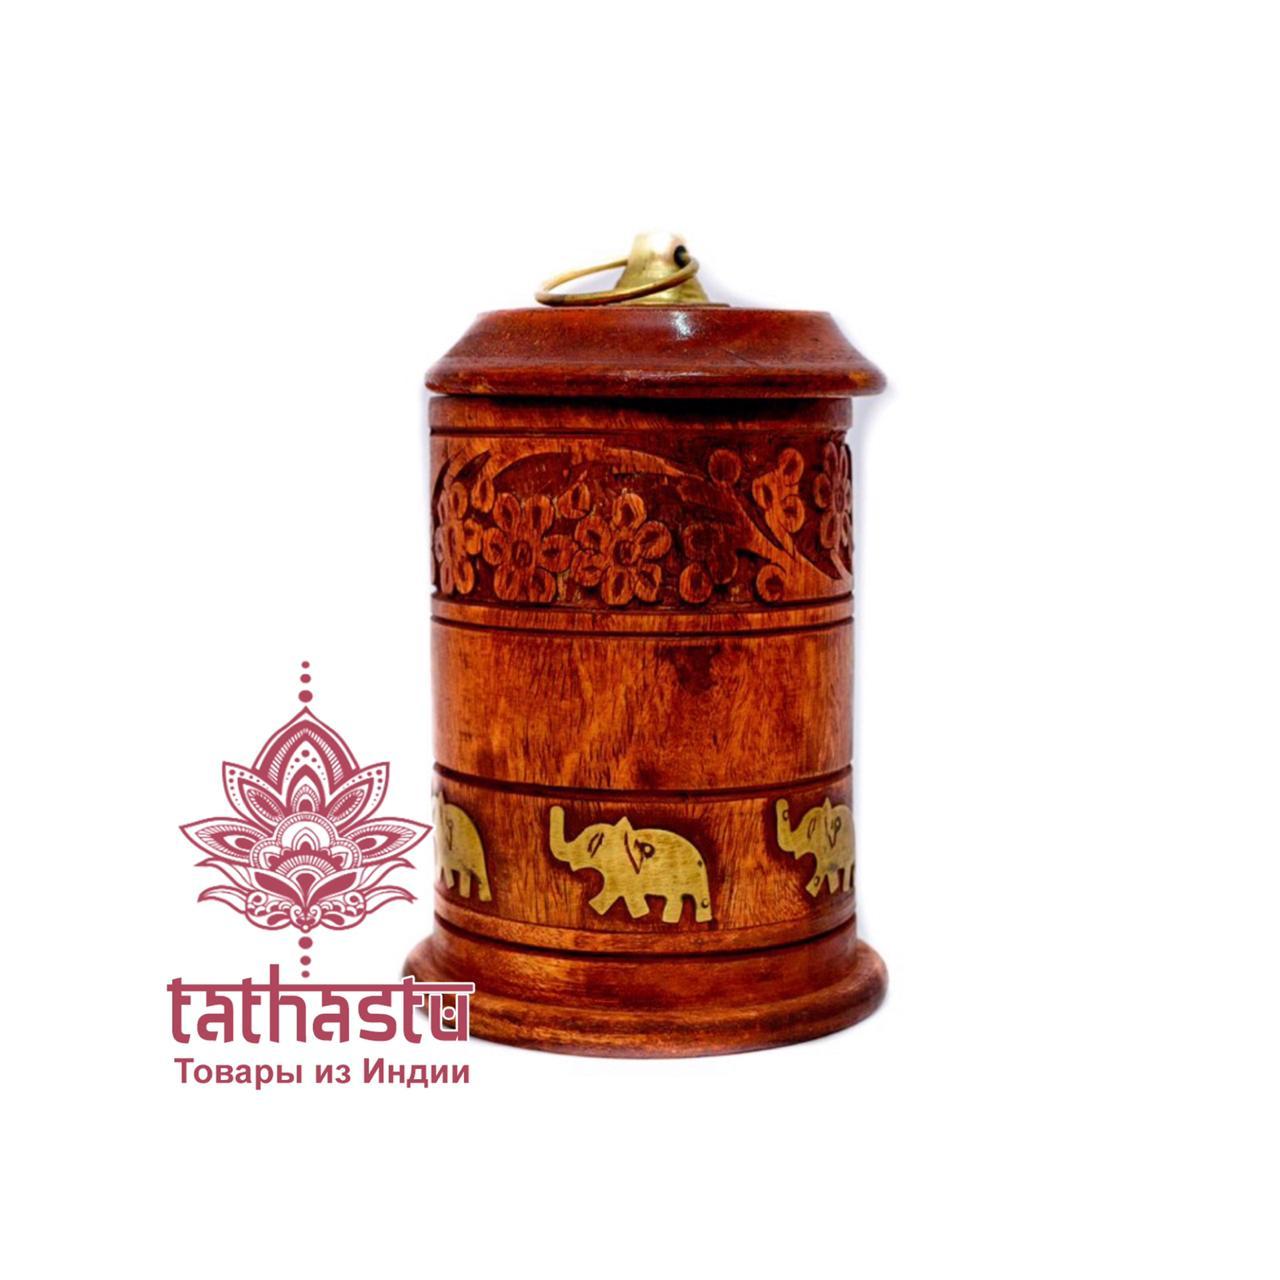 Tathastu красивые подарочные коробки. Tathastu товары и индии